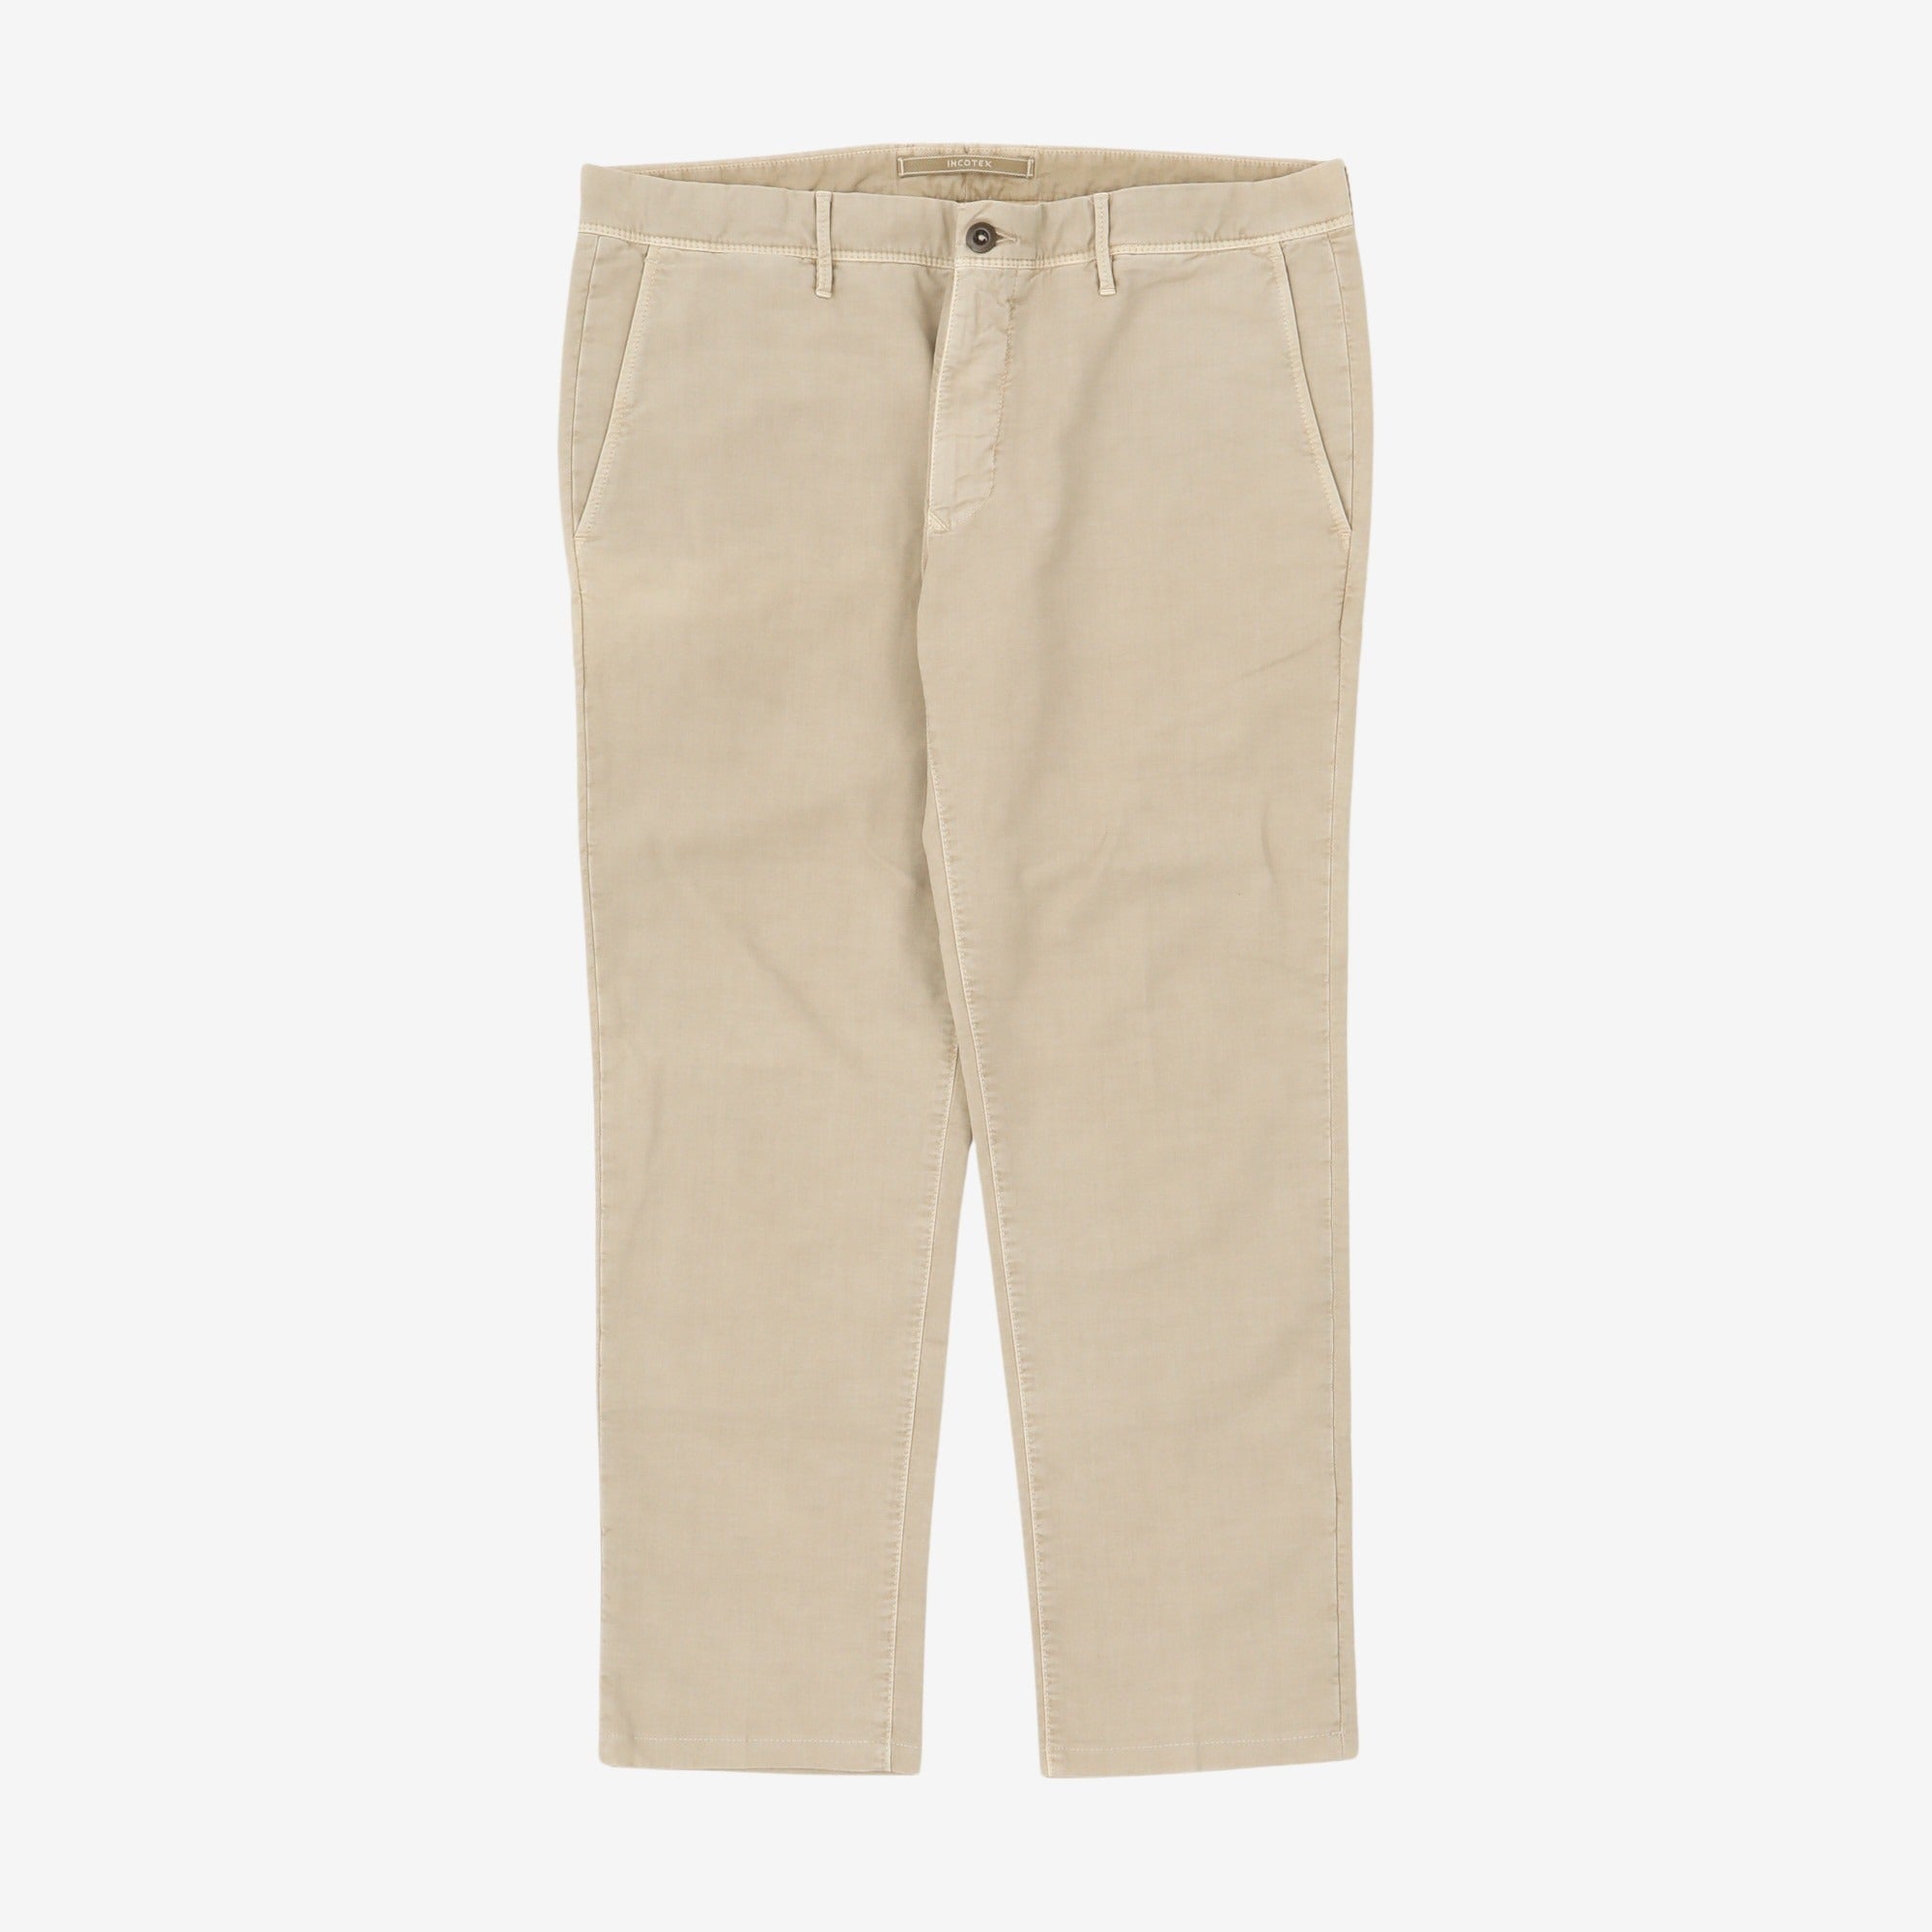 Slim Fit Chino Trousers (36W x 28L)